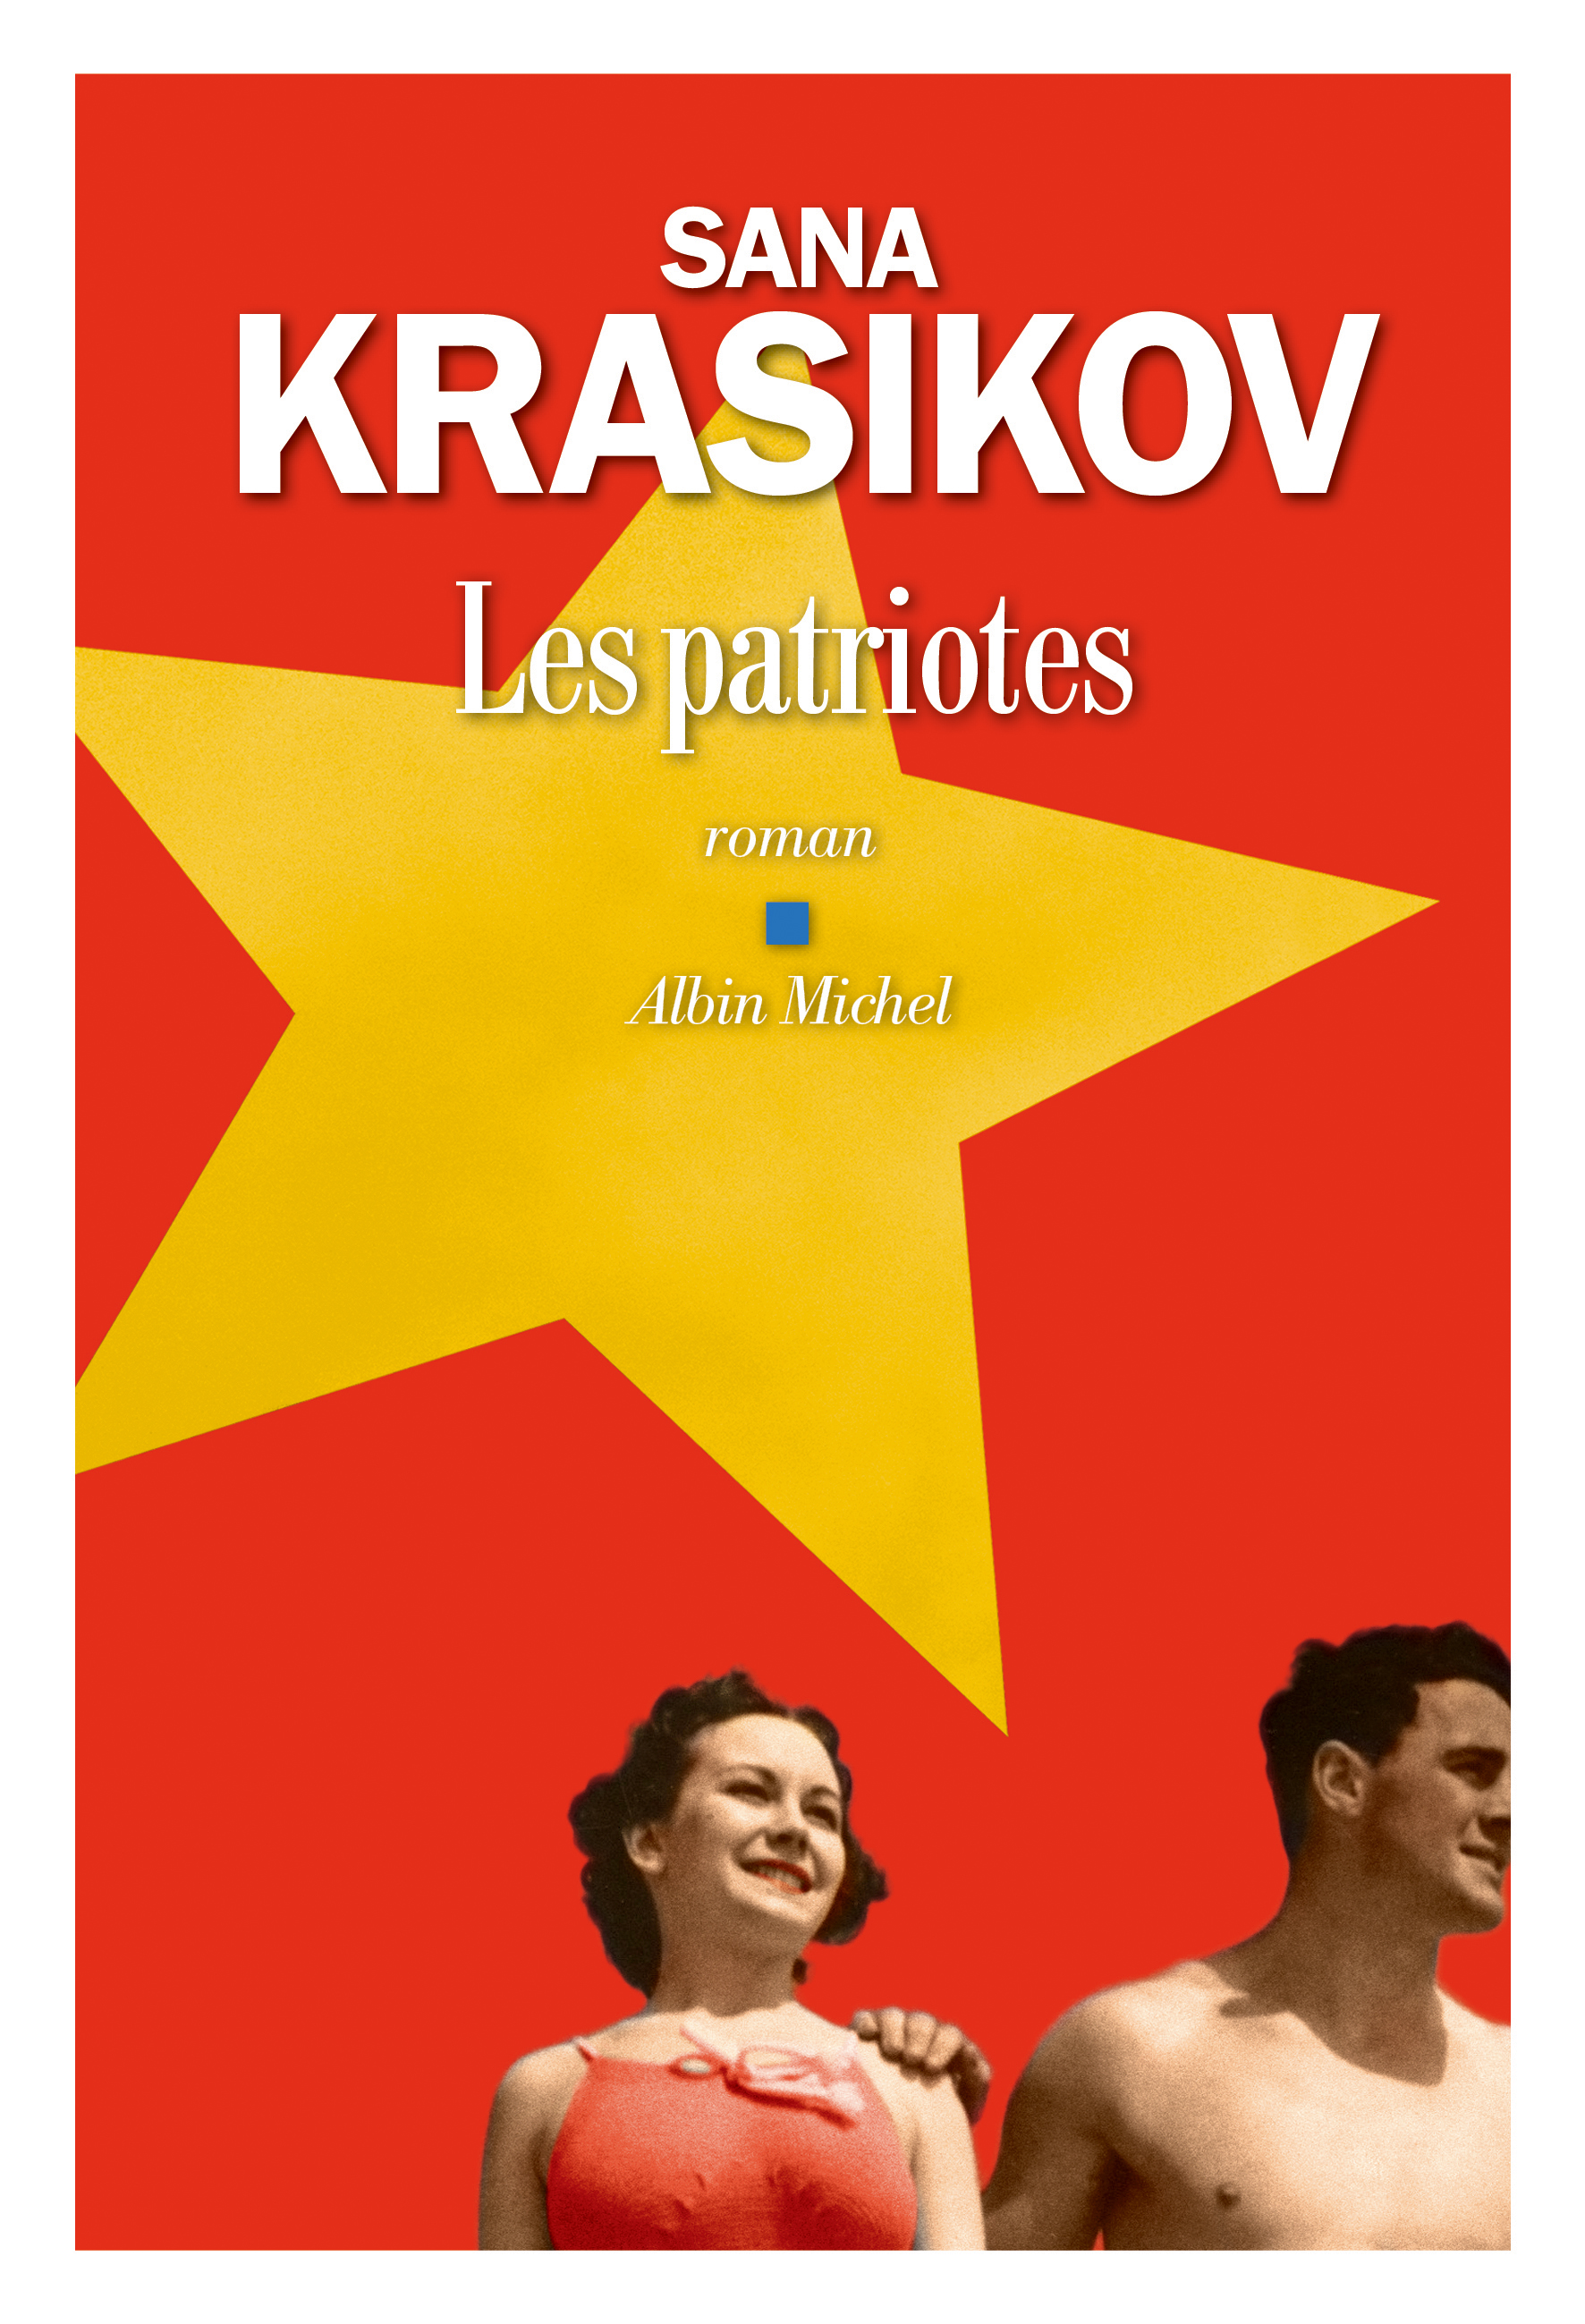 "Les patriotes" de Sana Krasikov